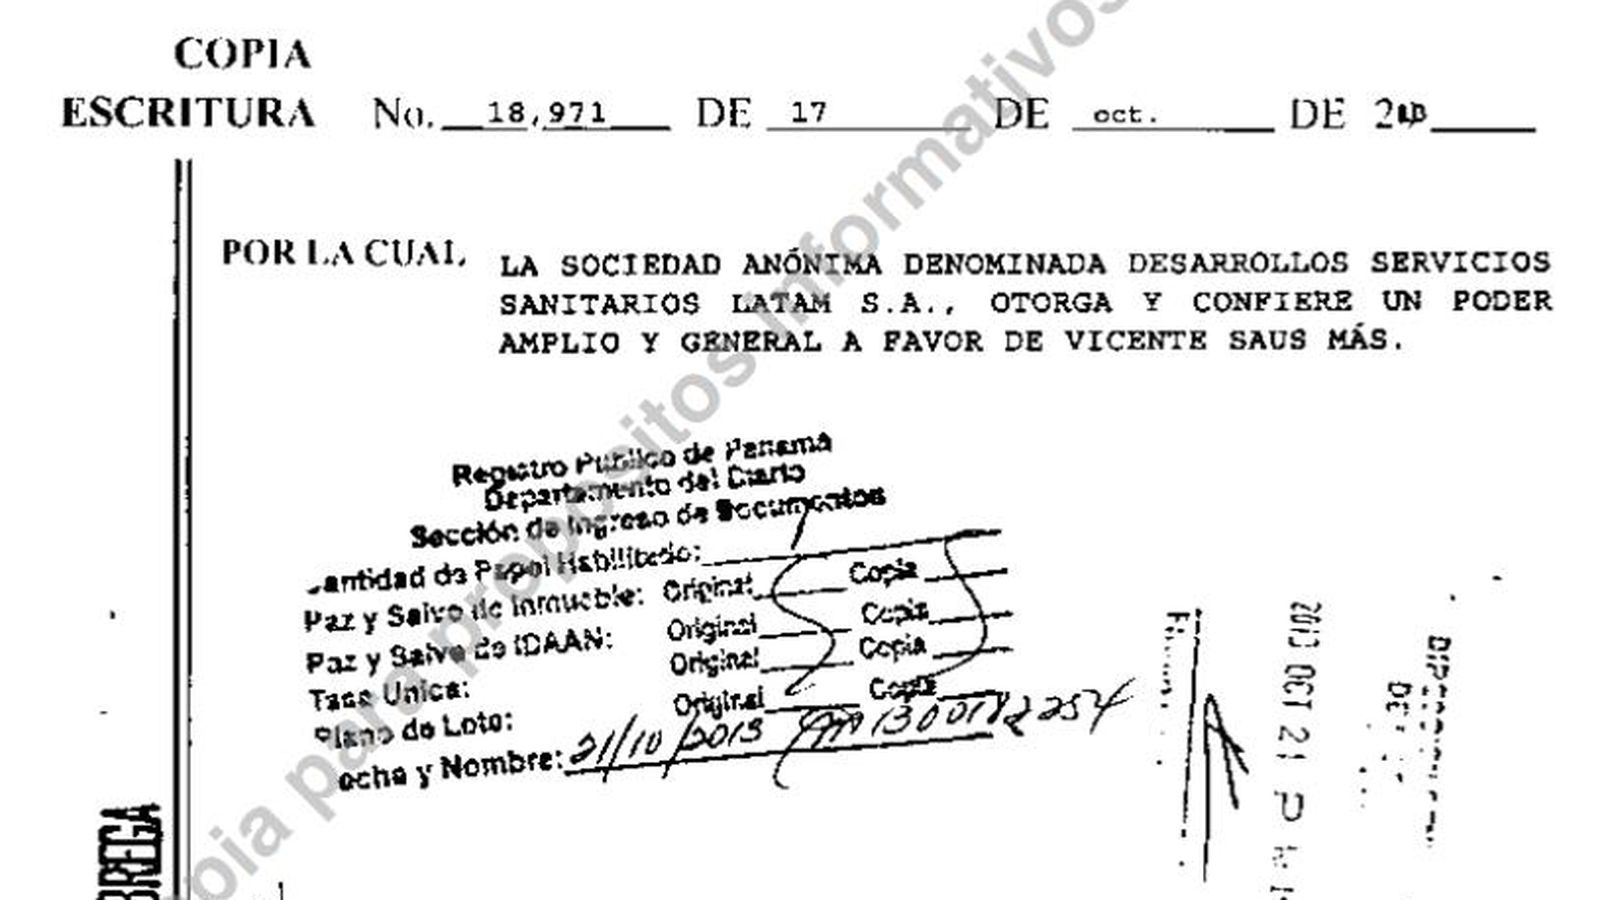 Foto: Escritura que da todo el poder a Vicente Saus en la sociedad de Panamá Desarrollos Servicios Sanitarios Latam